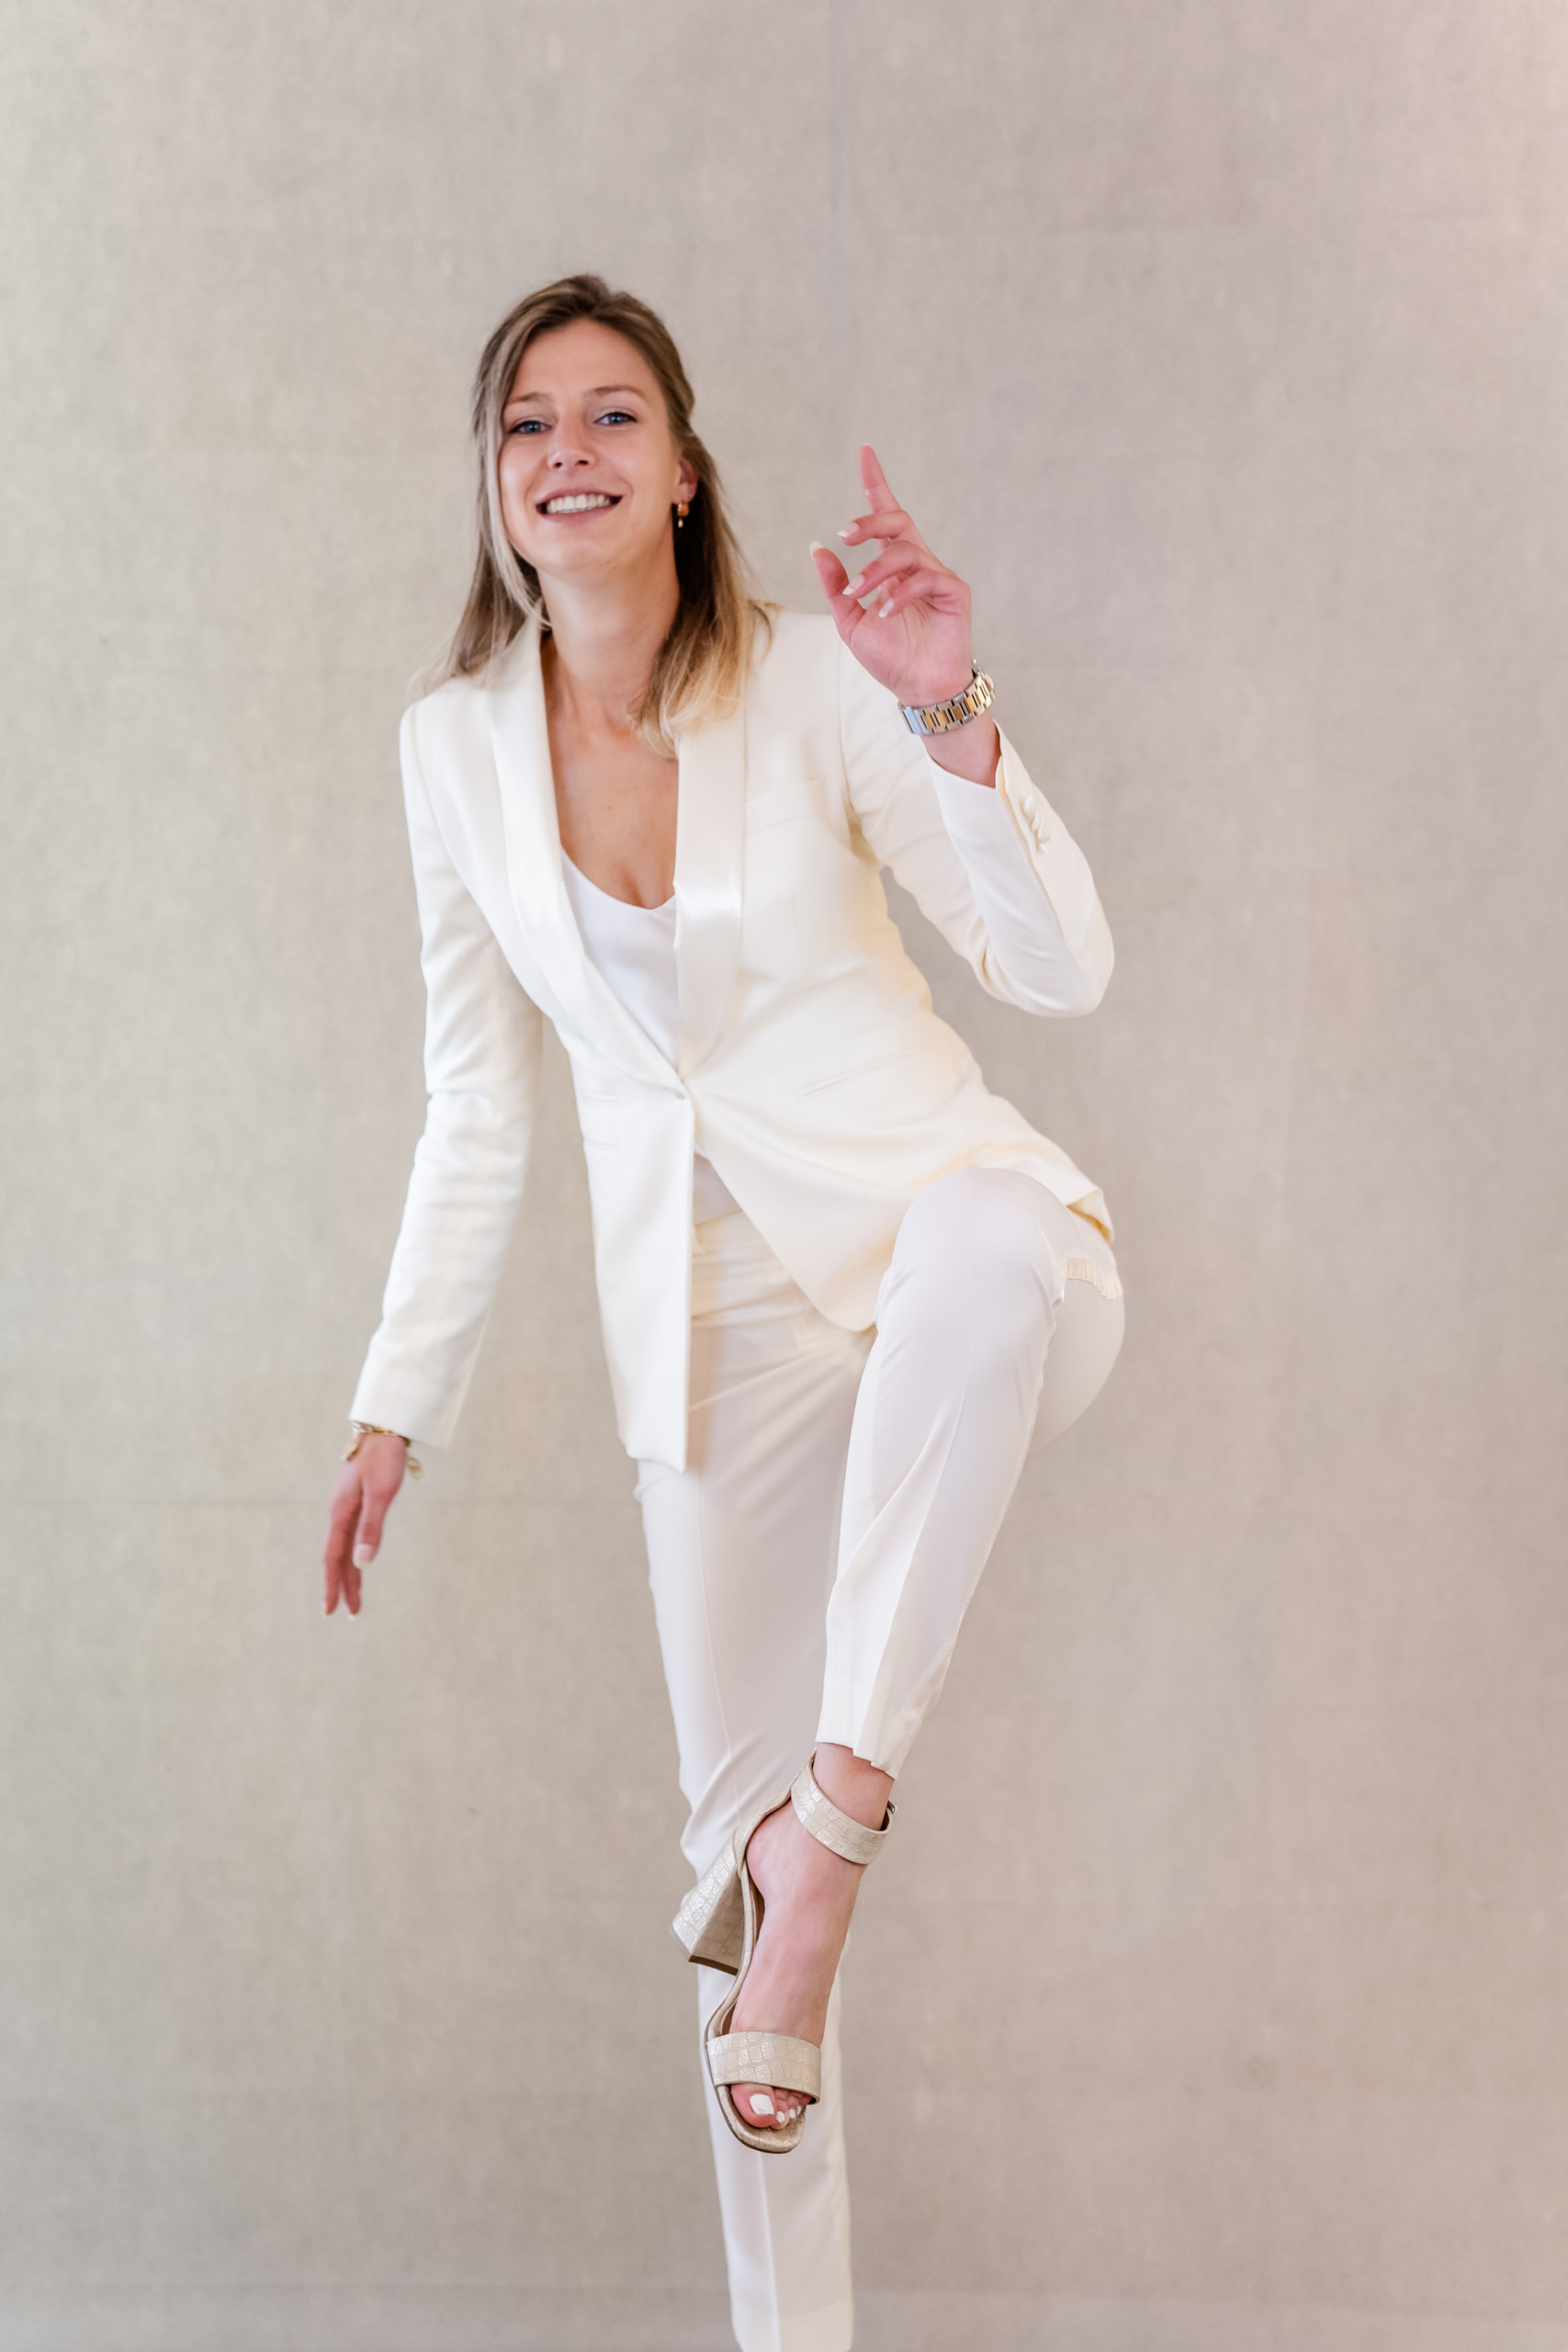 calcium Clan Noord Amerika Dames smokingpak off white – NAN – Stijlvolle zakelijke kleding voor  vrouwen met ambitie